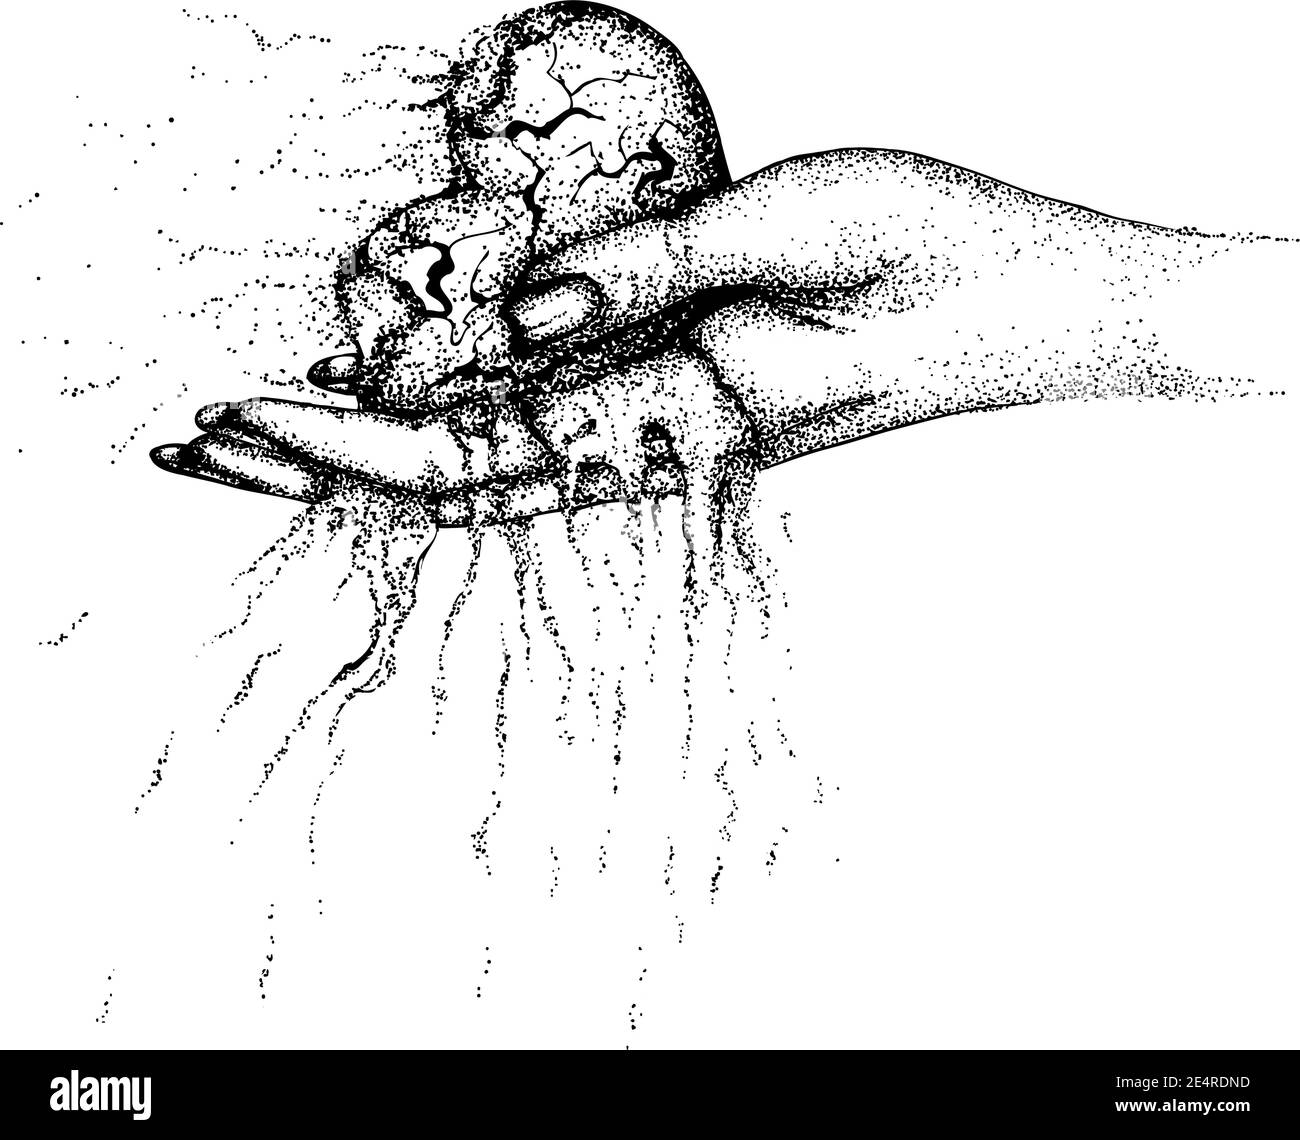 Ein verbranntes, zerbröckelndes Herz in einer Frauenhand. Vektor handgezeichnete Illustration. Monochrome Zeichnung isoliert auf weißem Hintergrund Stock Vektor